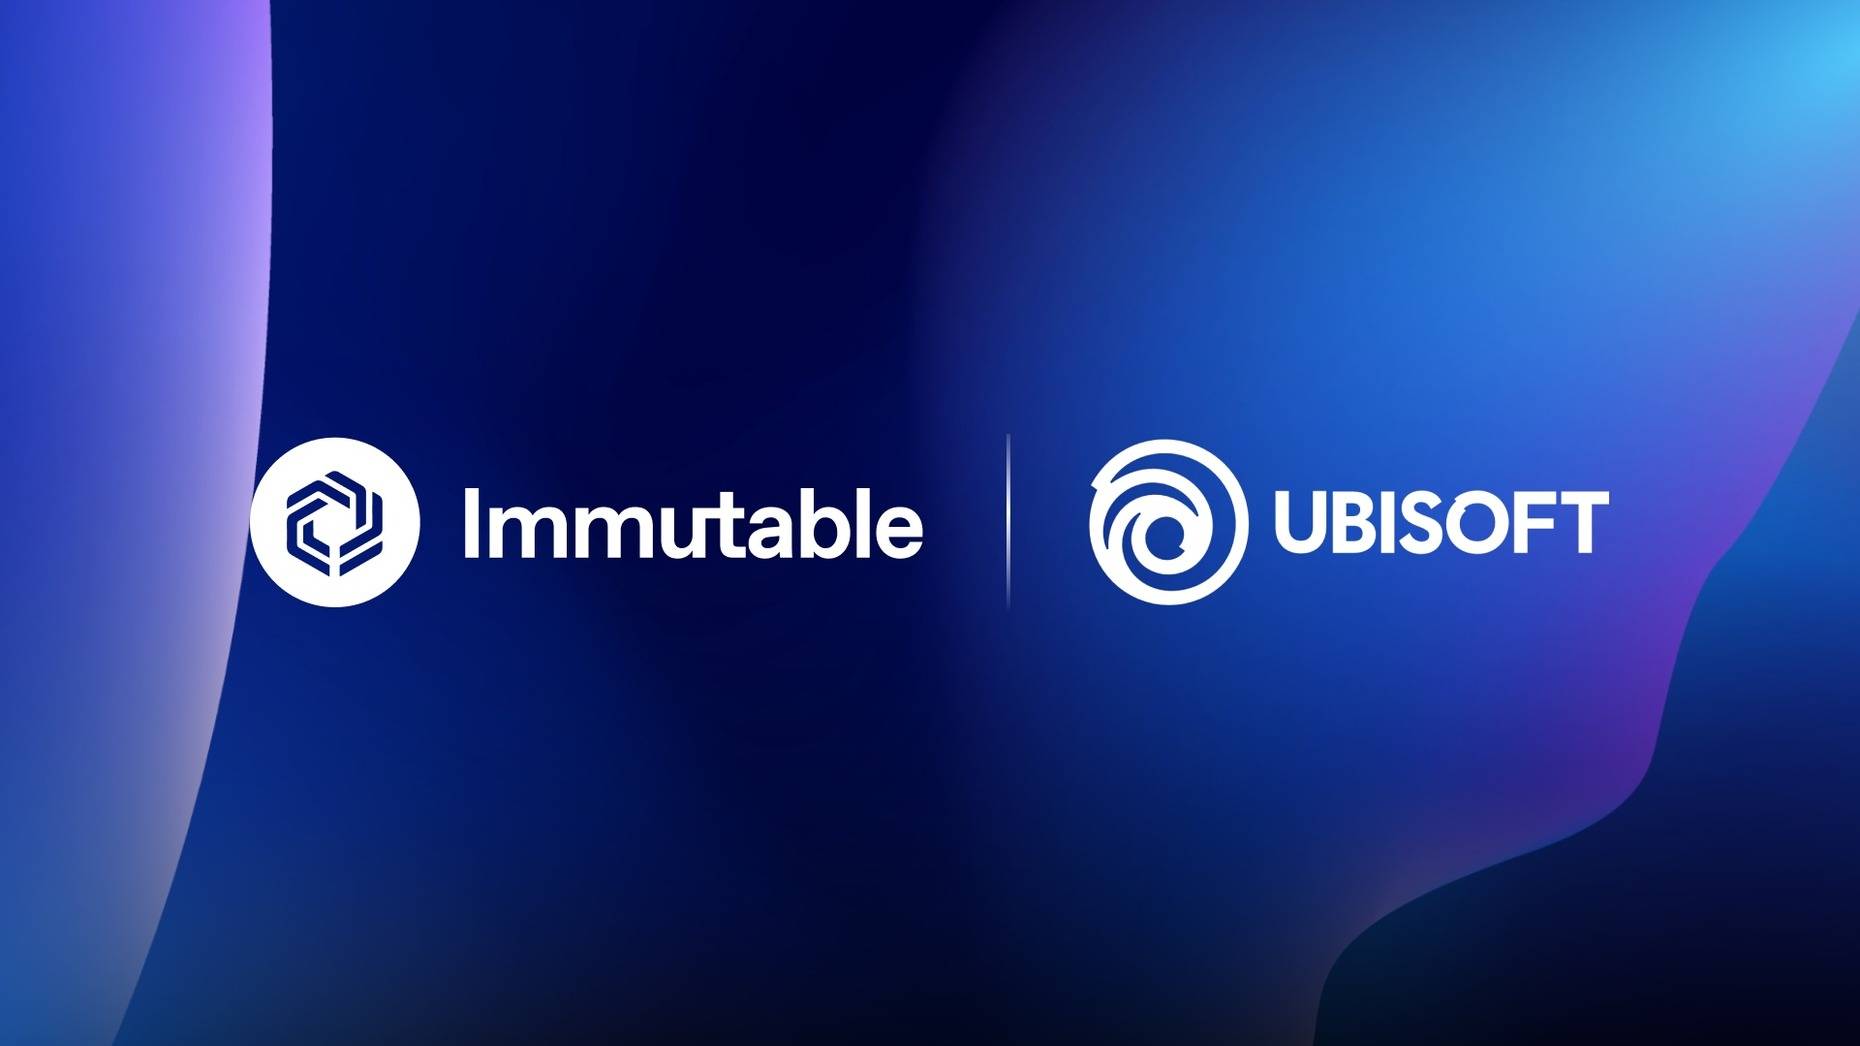 Ubisoft und Immutable bündeln ihre Kräfte für ein revolutionäres Web3-Gaming-Erlebnis